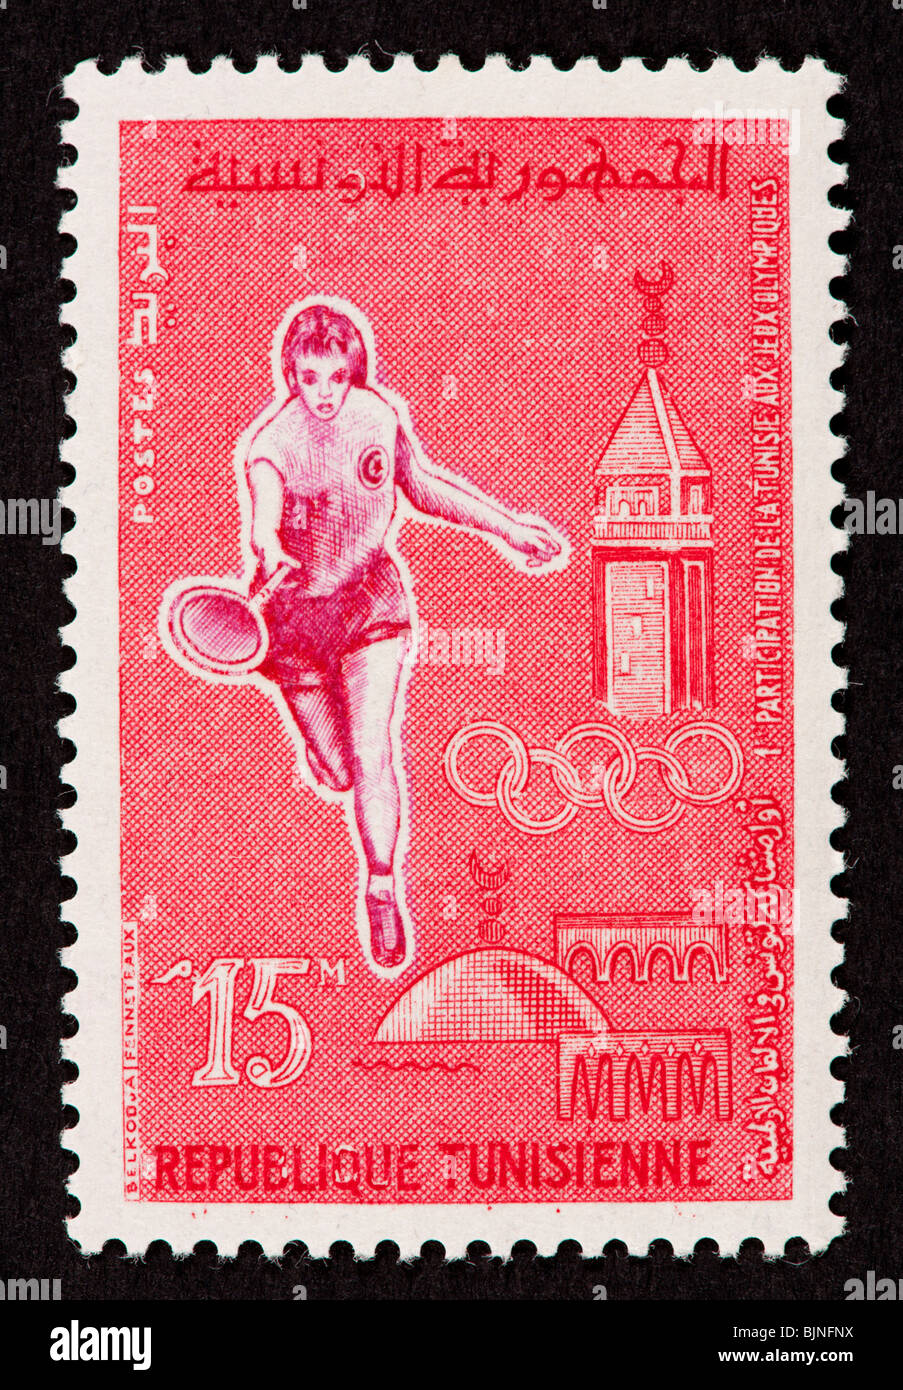 Timbre-poste de Tunisie représentant une femme tennis plary et minaret (Rome, 1960). Banque D'Images